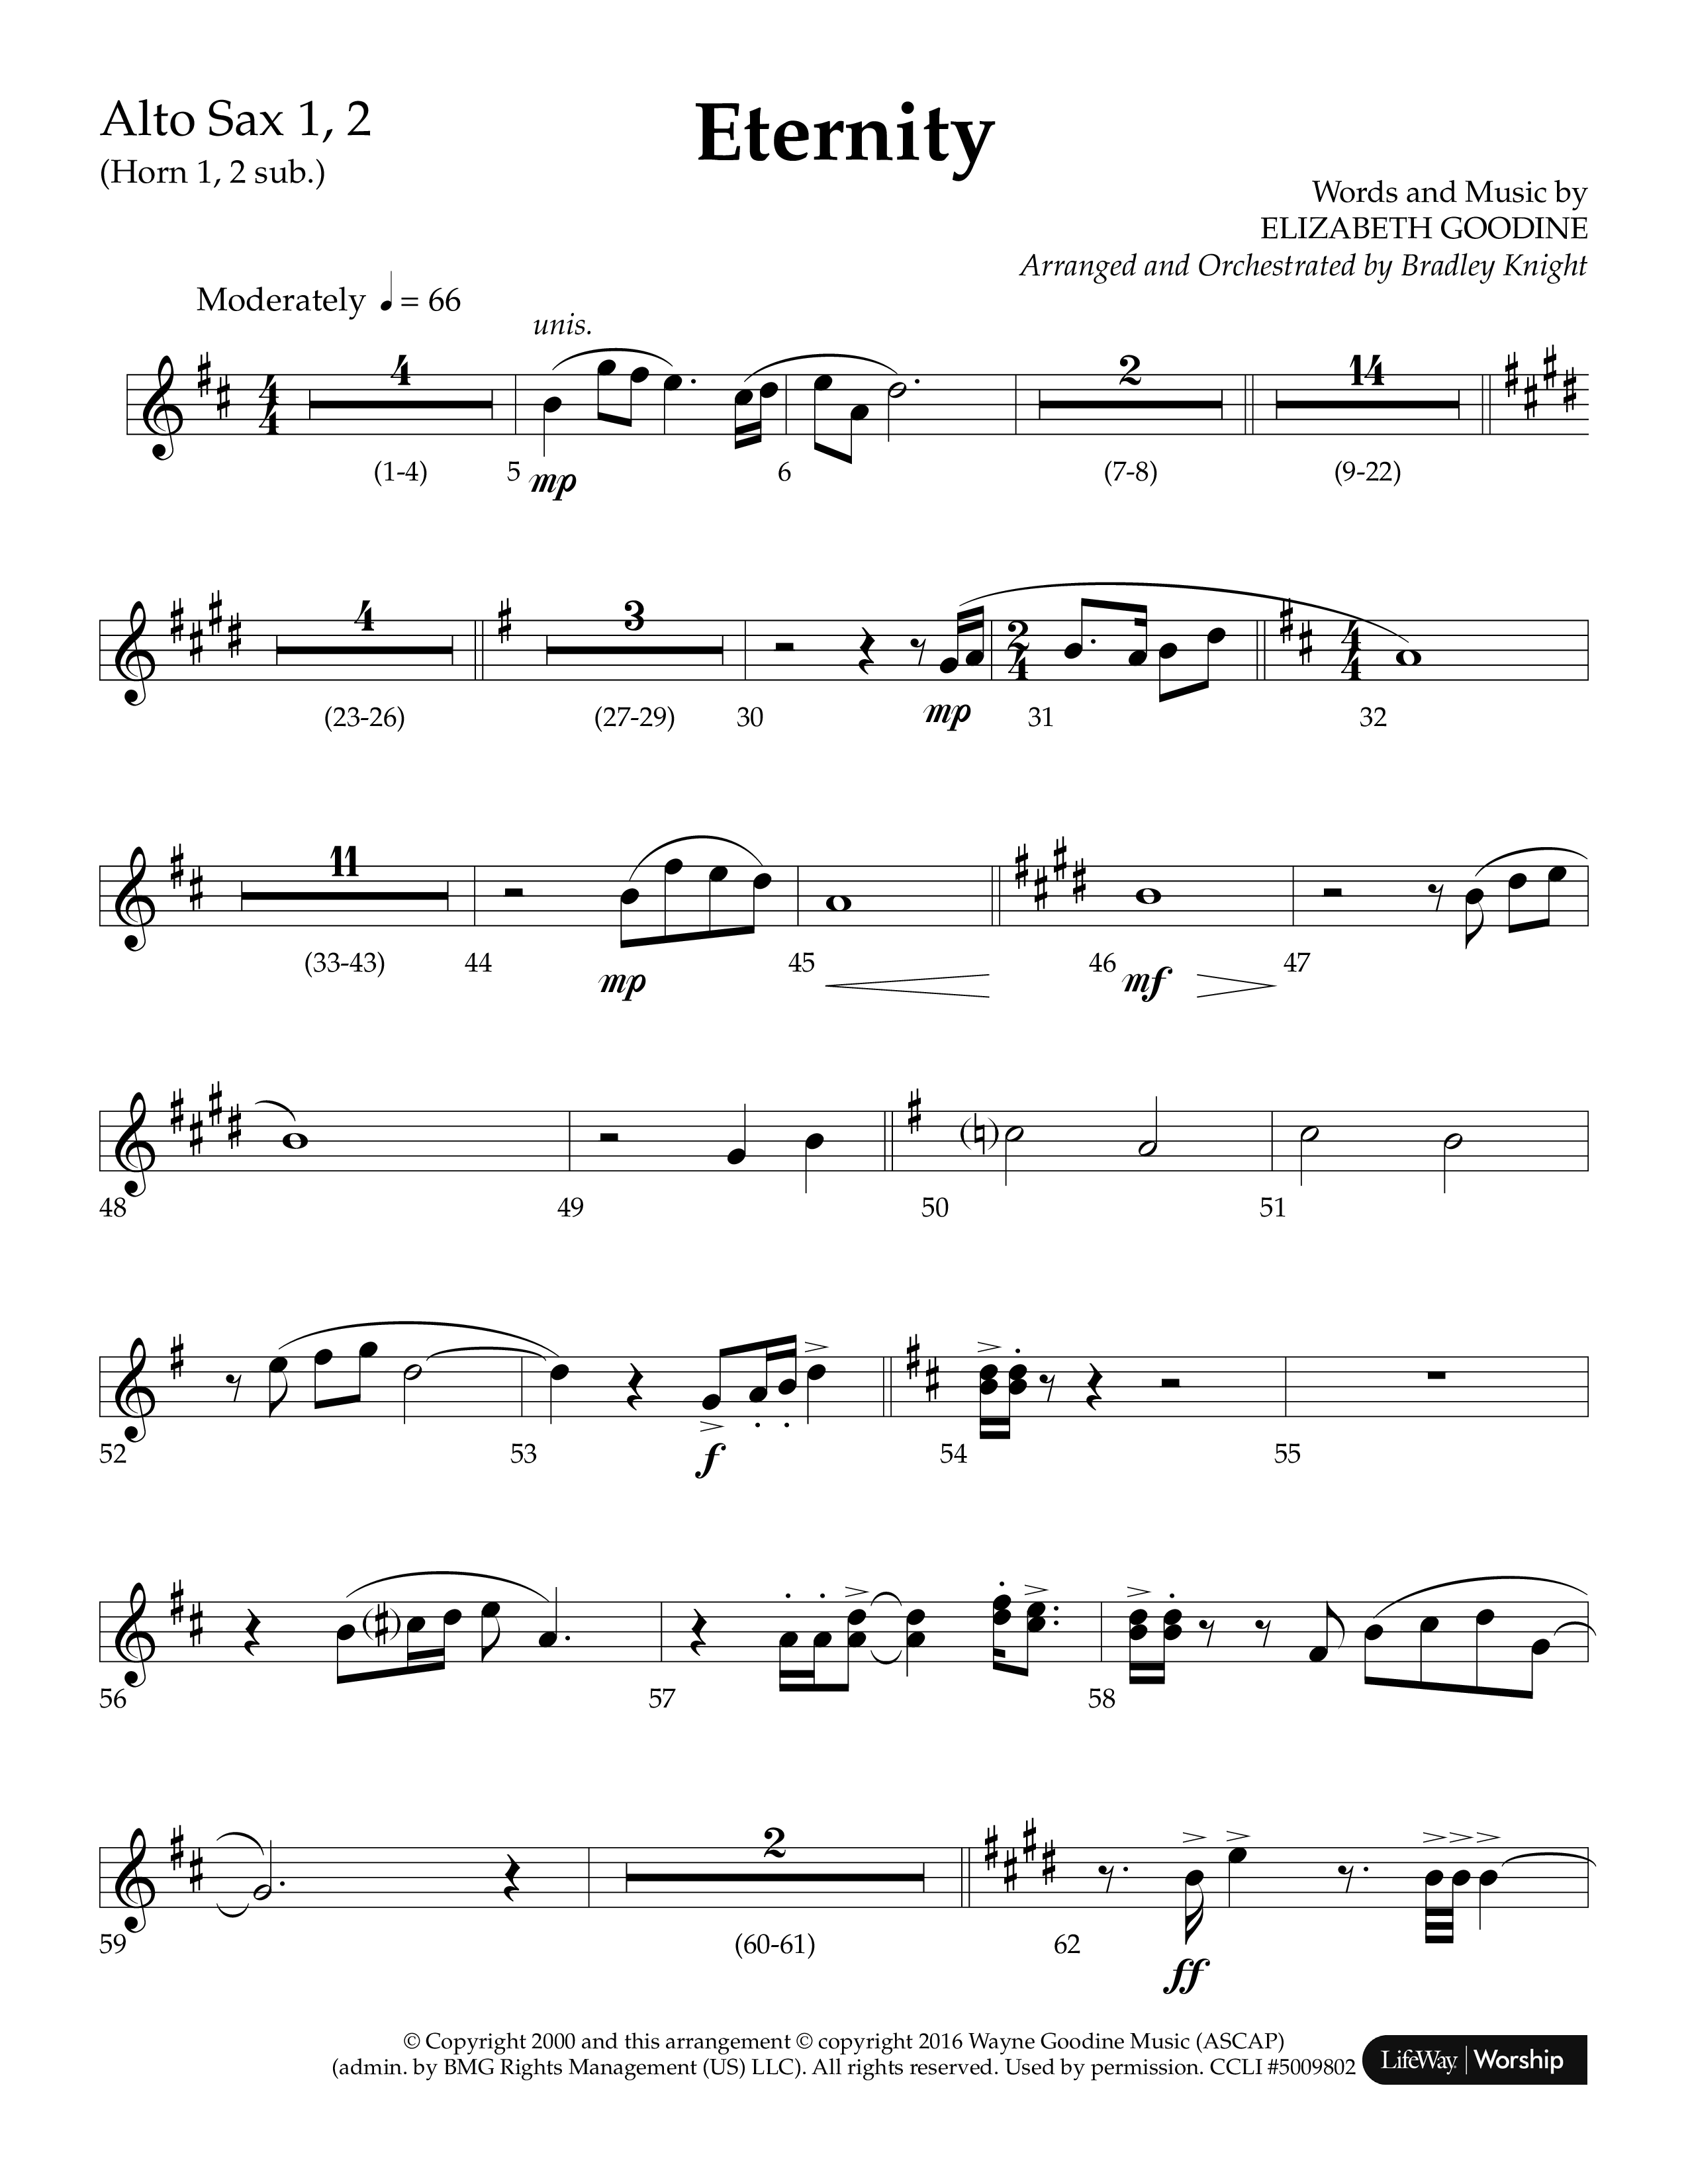 Eternity (Choral Anthem SATB) Alto Sax 1/2 (Lifeway Choral / Arr. Bradley Knight)